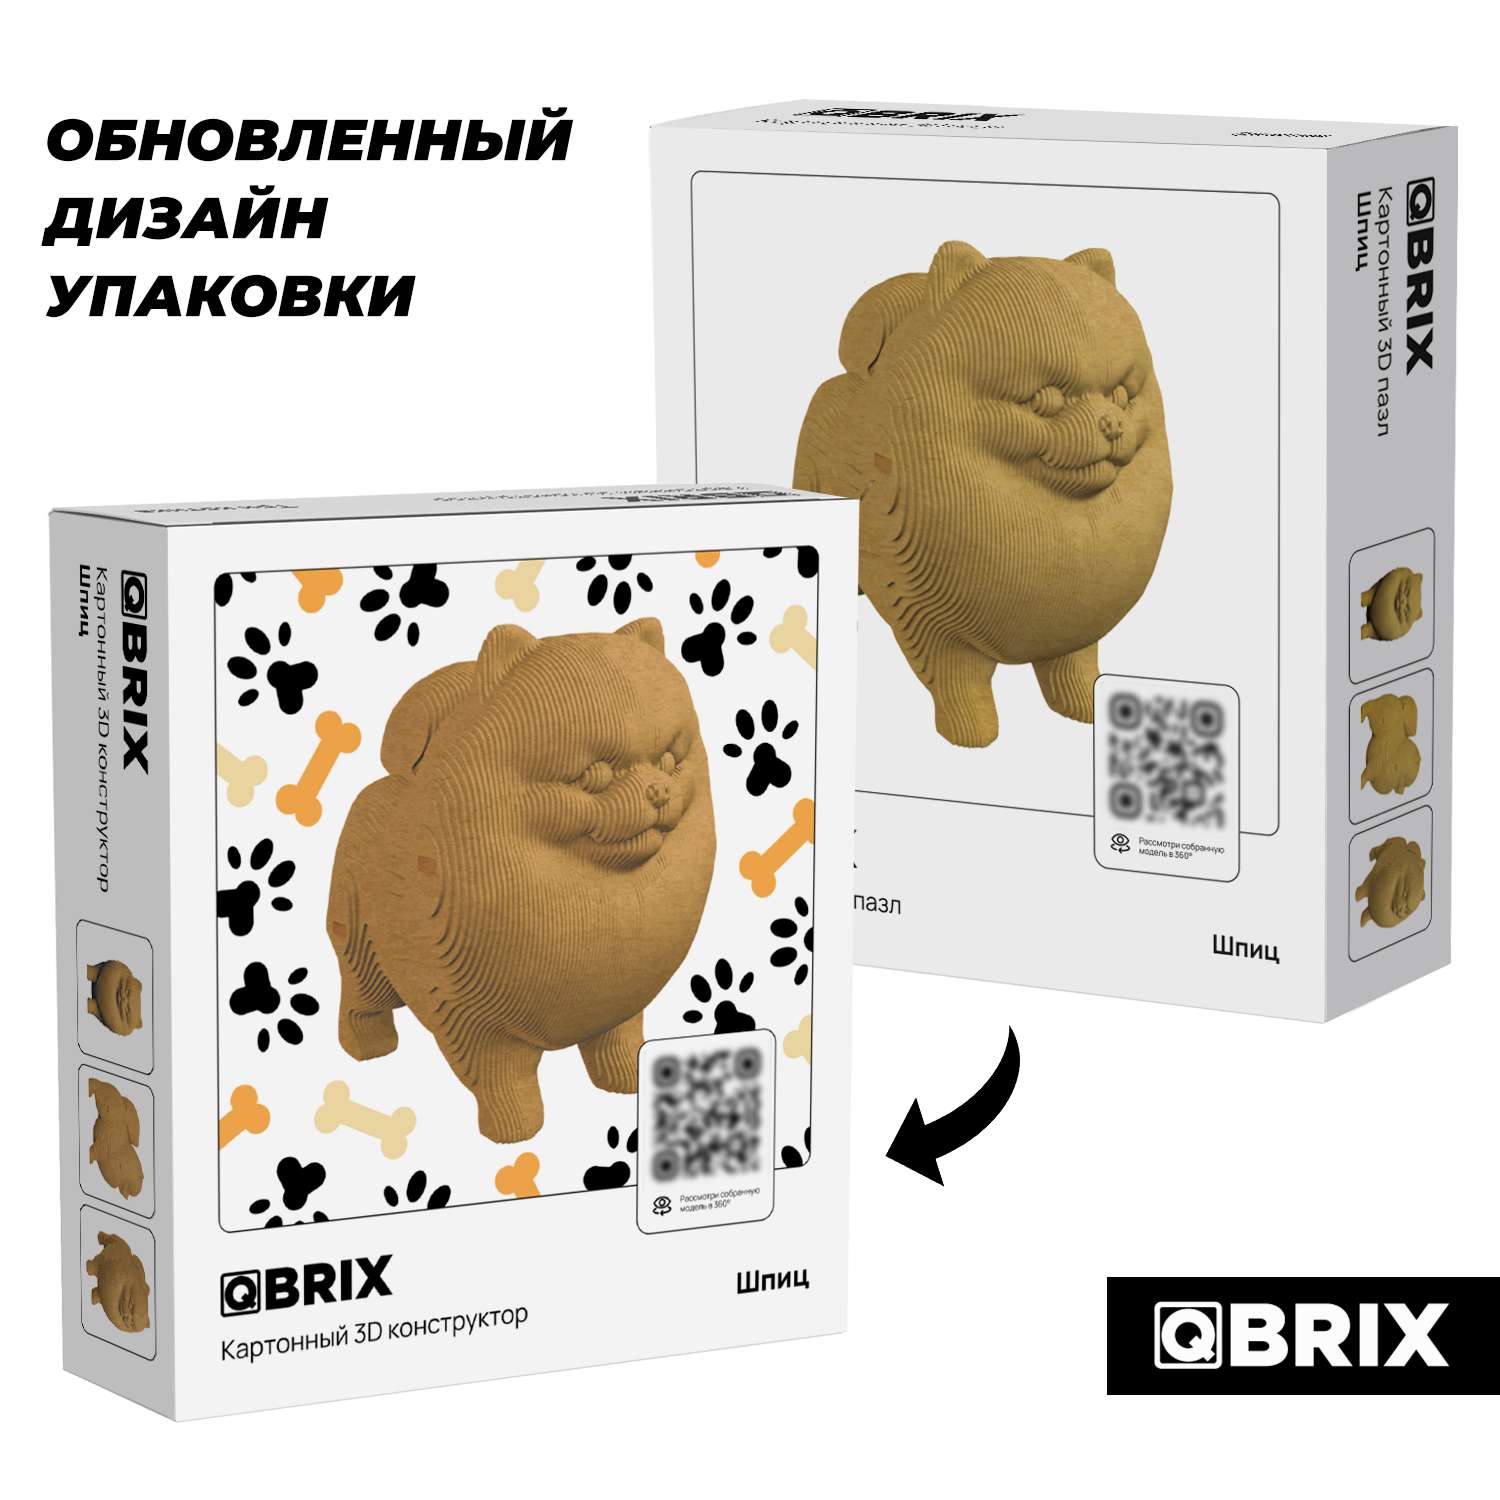 Конструктор QBRIX 3D картонный Шпиц 20023 20023 - фото 2